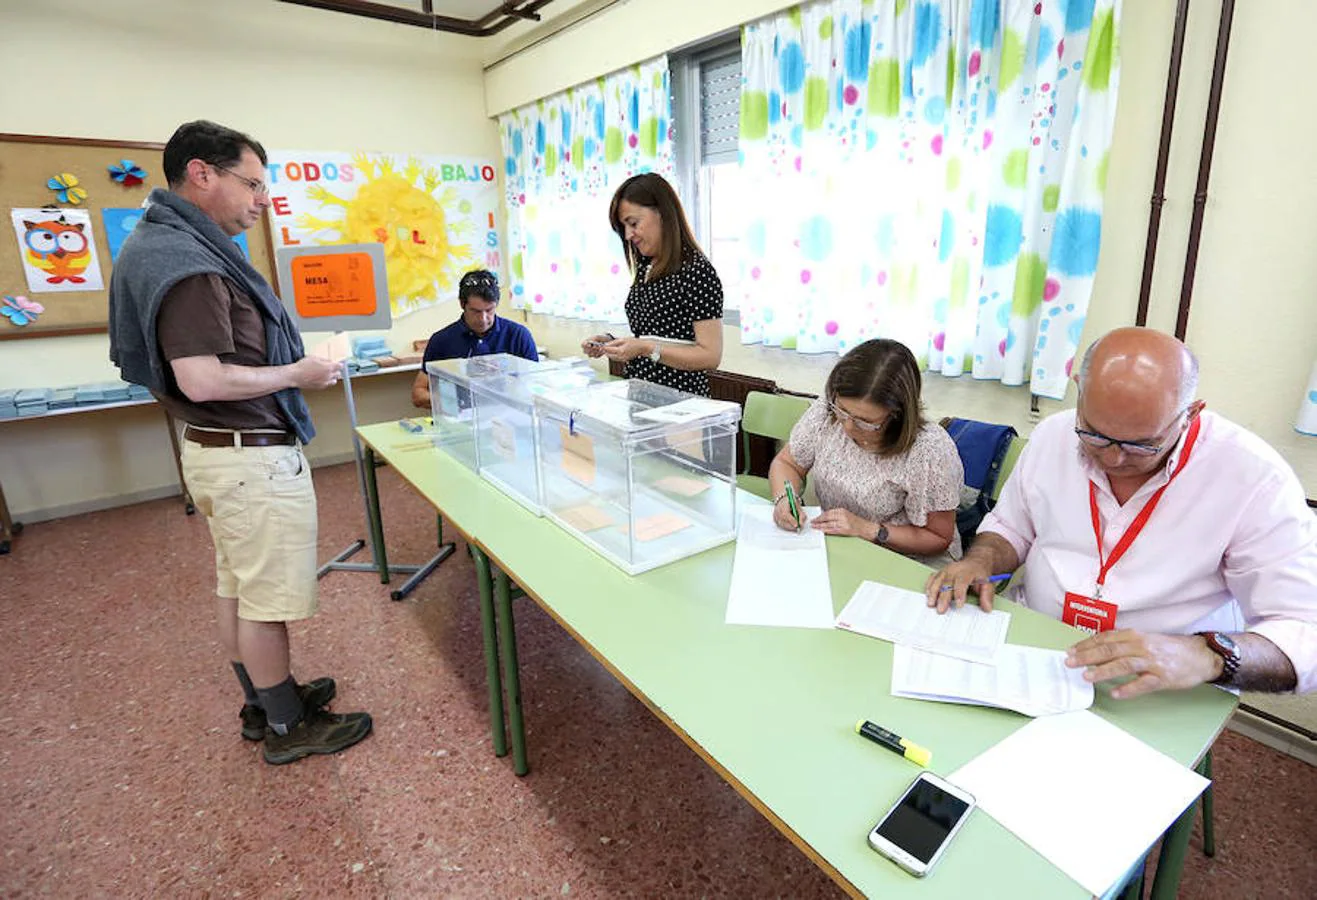 La jornada electoral en Castilla-La Mancha, en imágenes